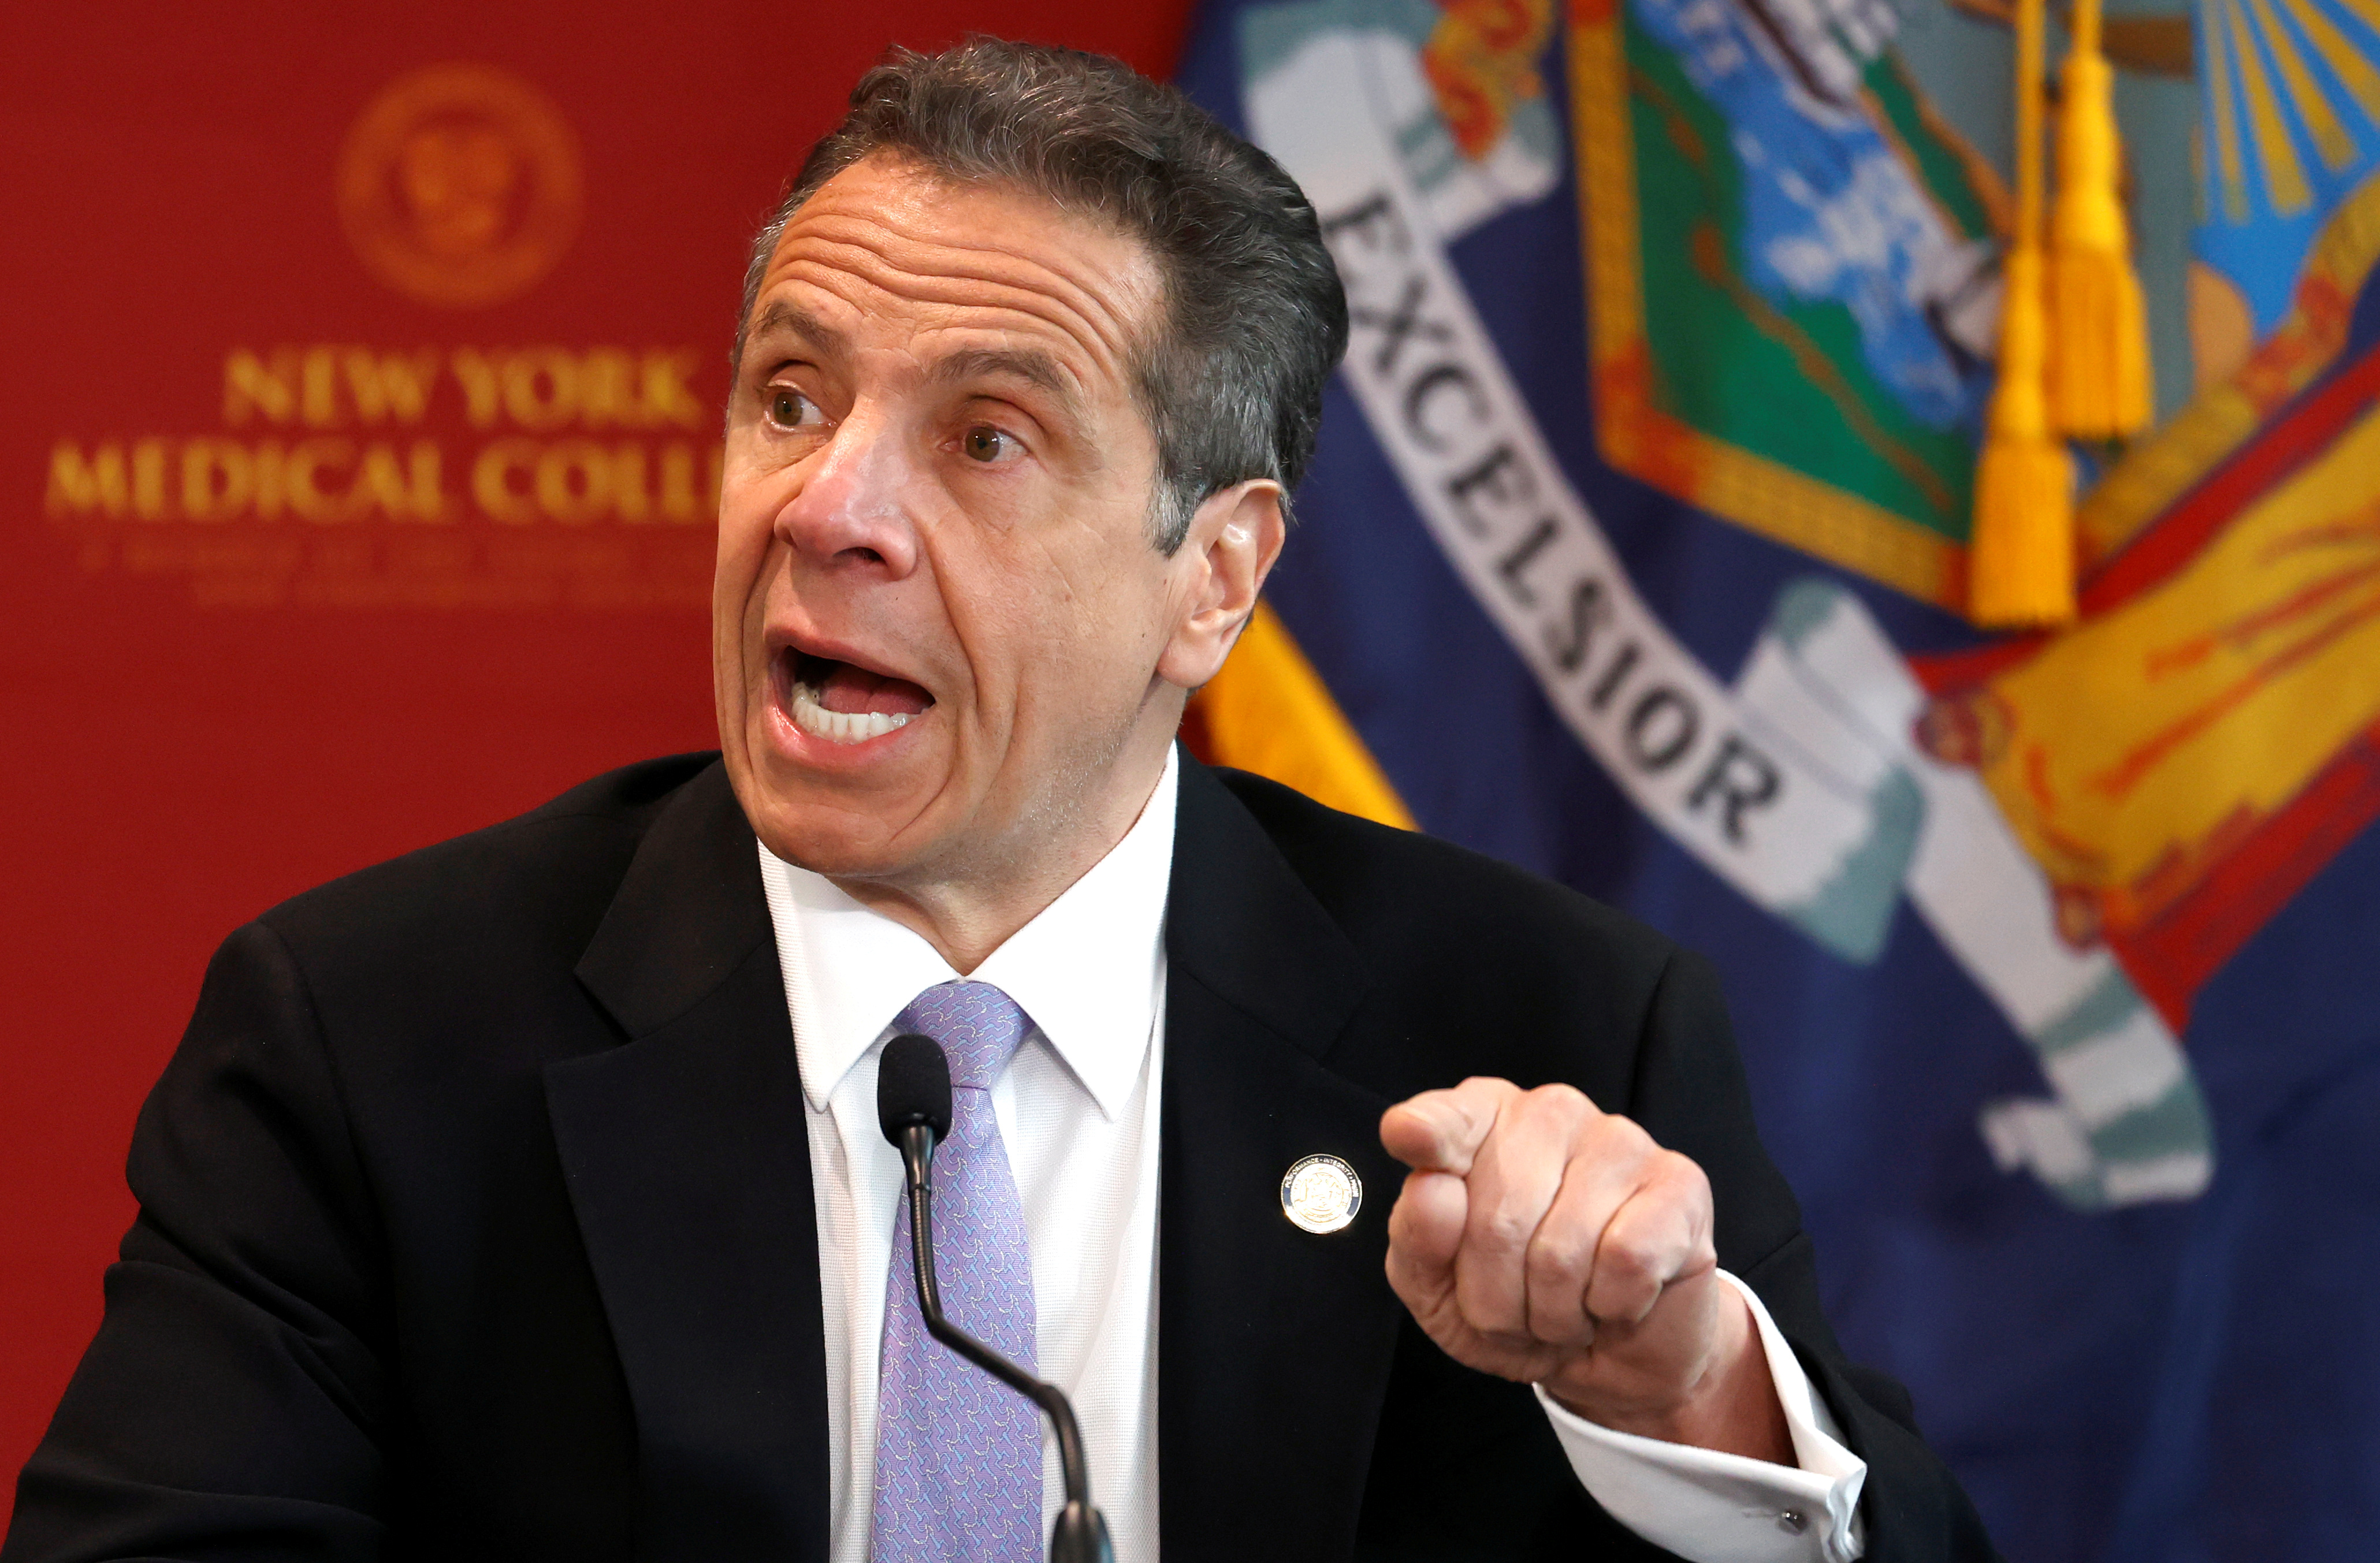 El gobernador del estado de Nueva York, Andrew Cuomo. Foto: REUTERS/Mike Segar